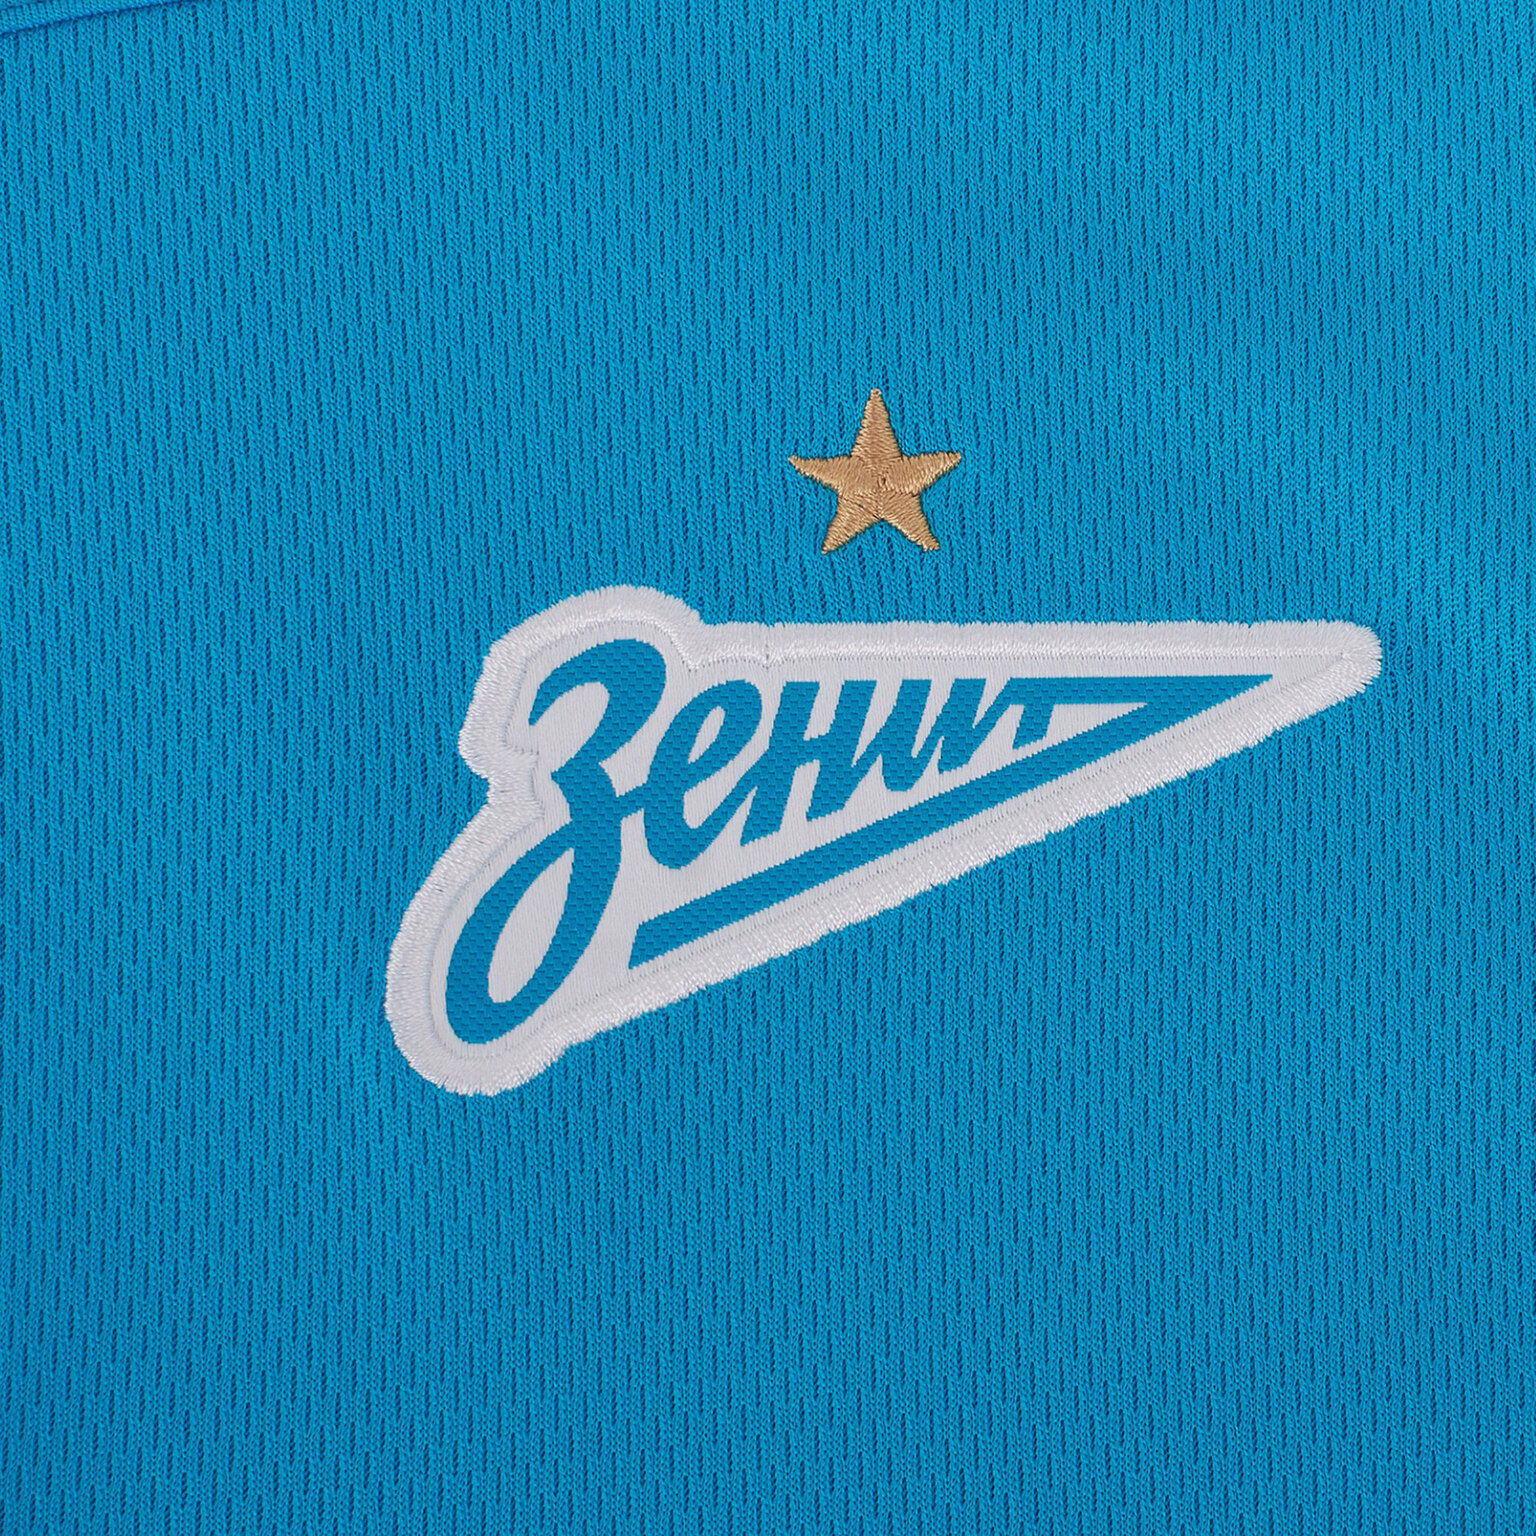 Куртка от костюма Nike Zenit сезон 2021/22